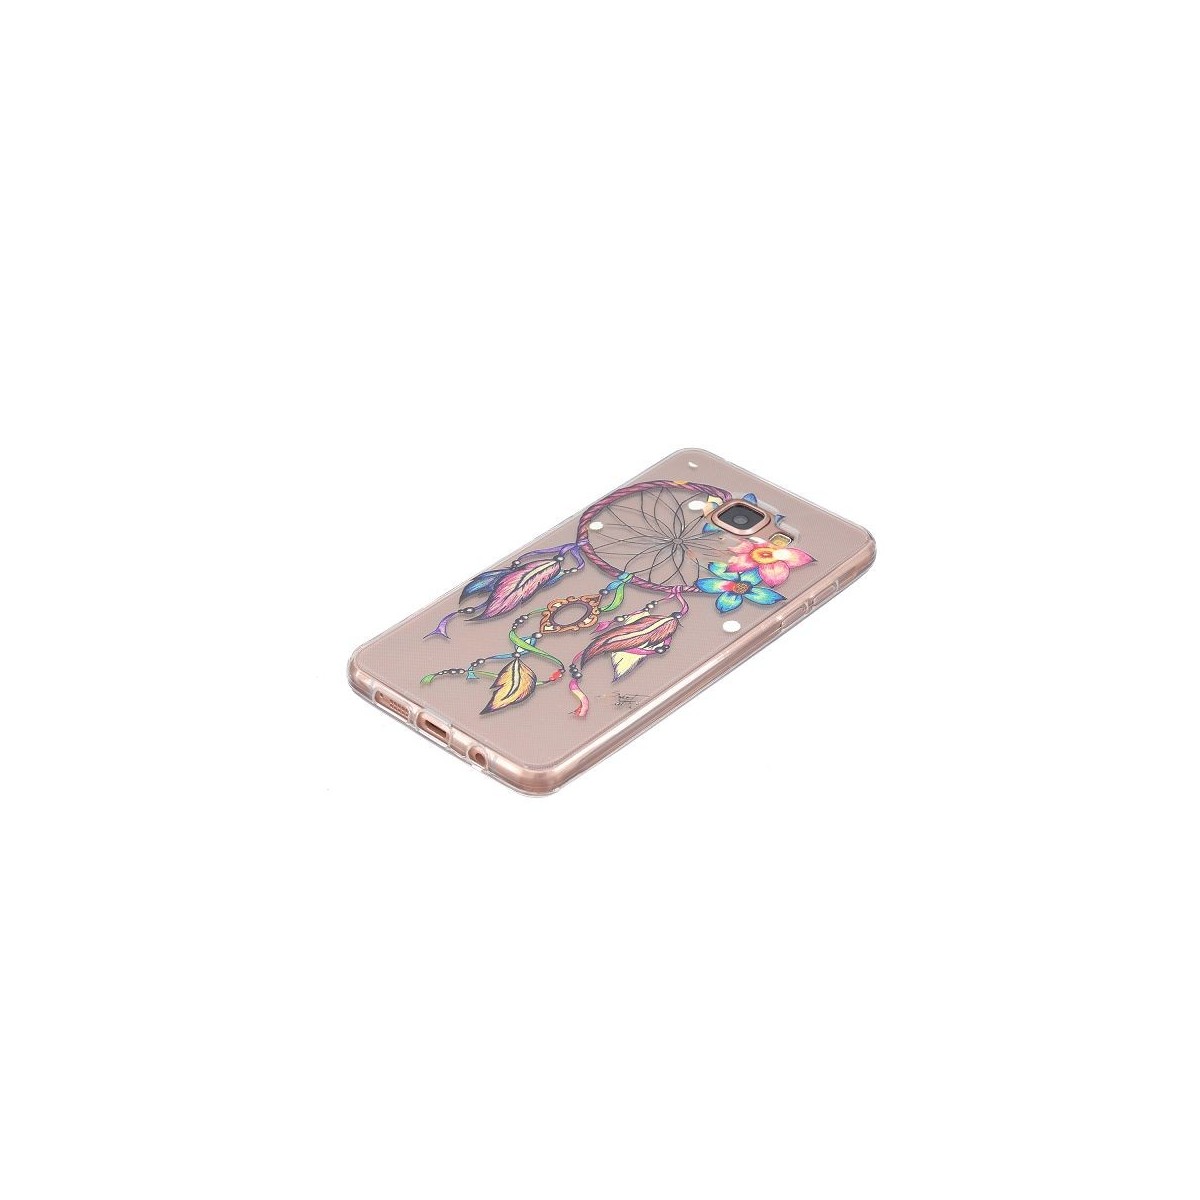 Coque Galaxy A5 (2016) Transparente souple motif Attrape Rêves Coloré et Fleurs - Crazy Kase